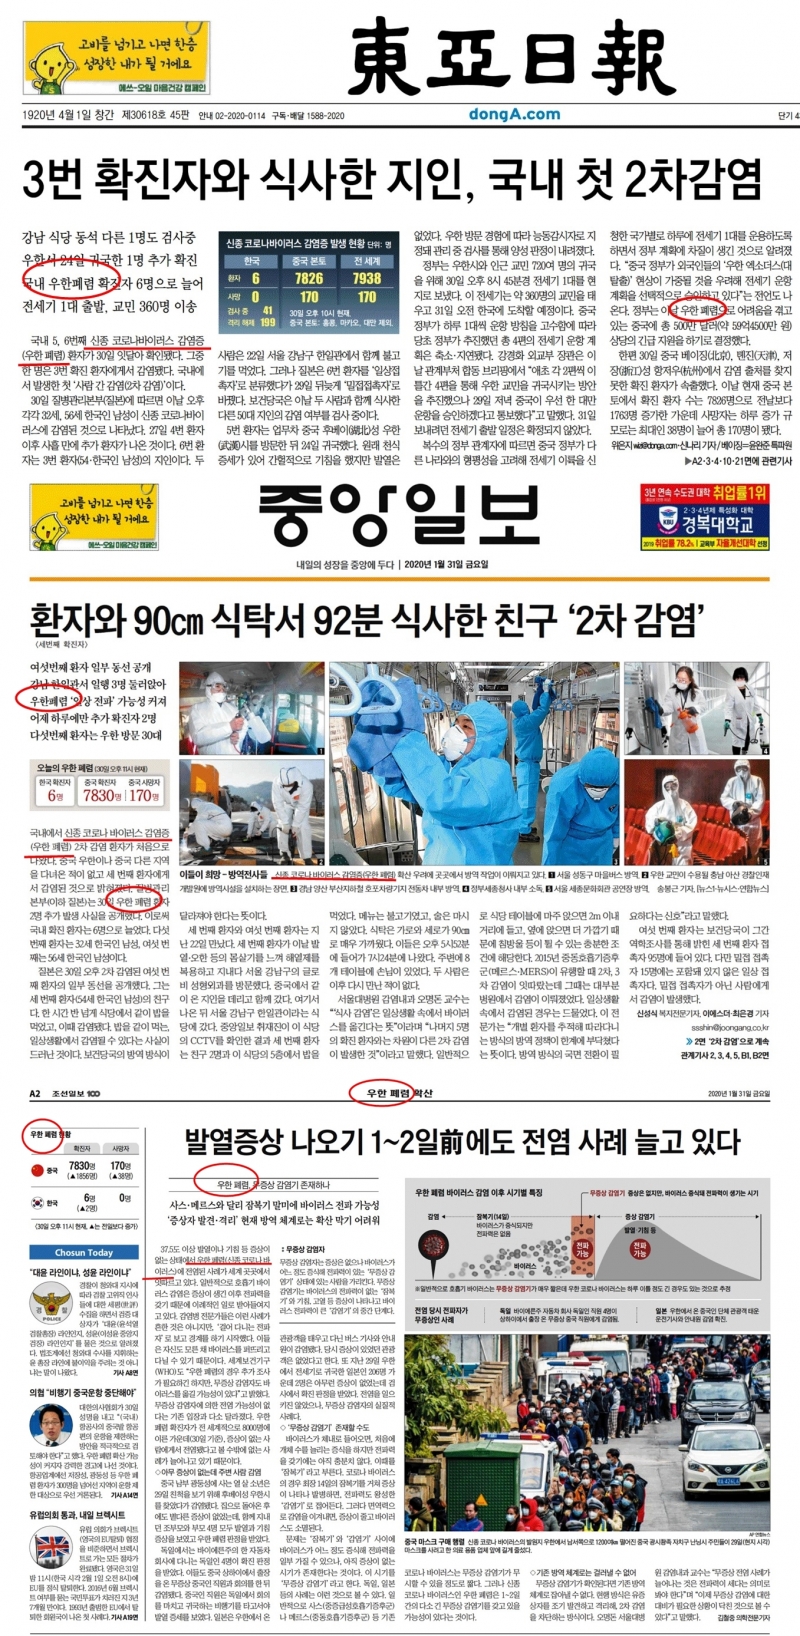 ▲ 지난 1월31일 동아일보, 중앙일보, 조선일보 지면보도